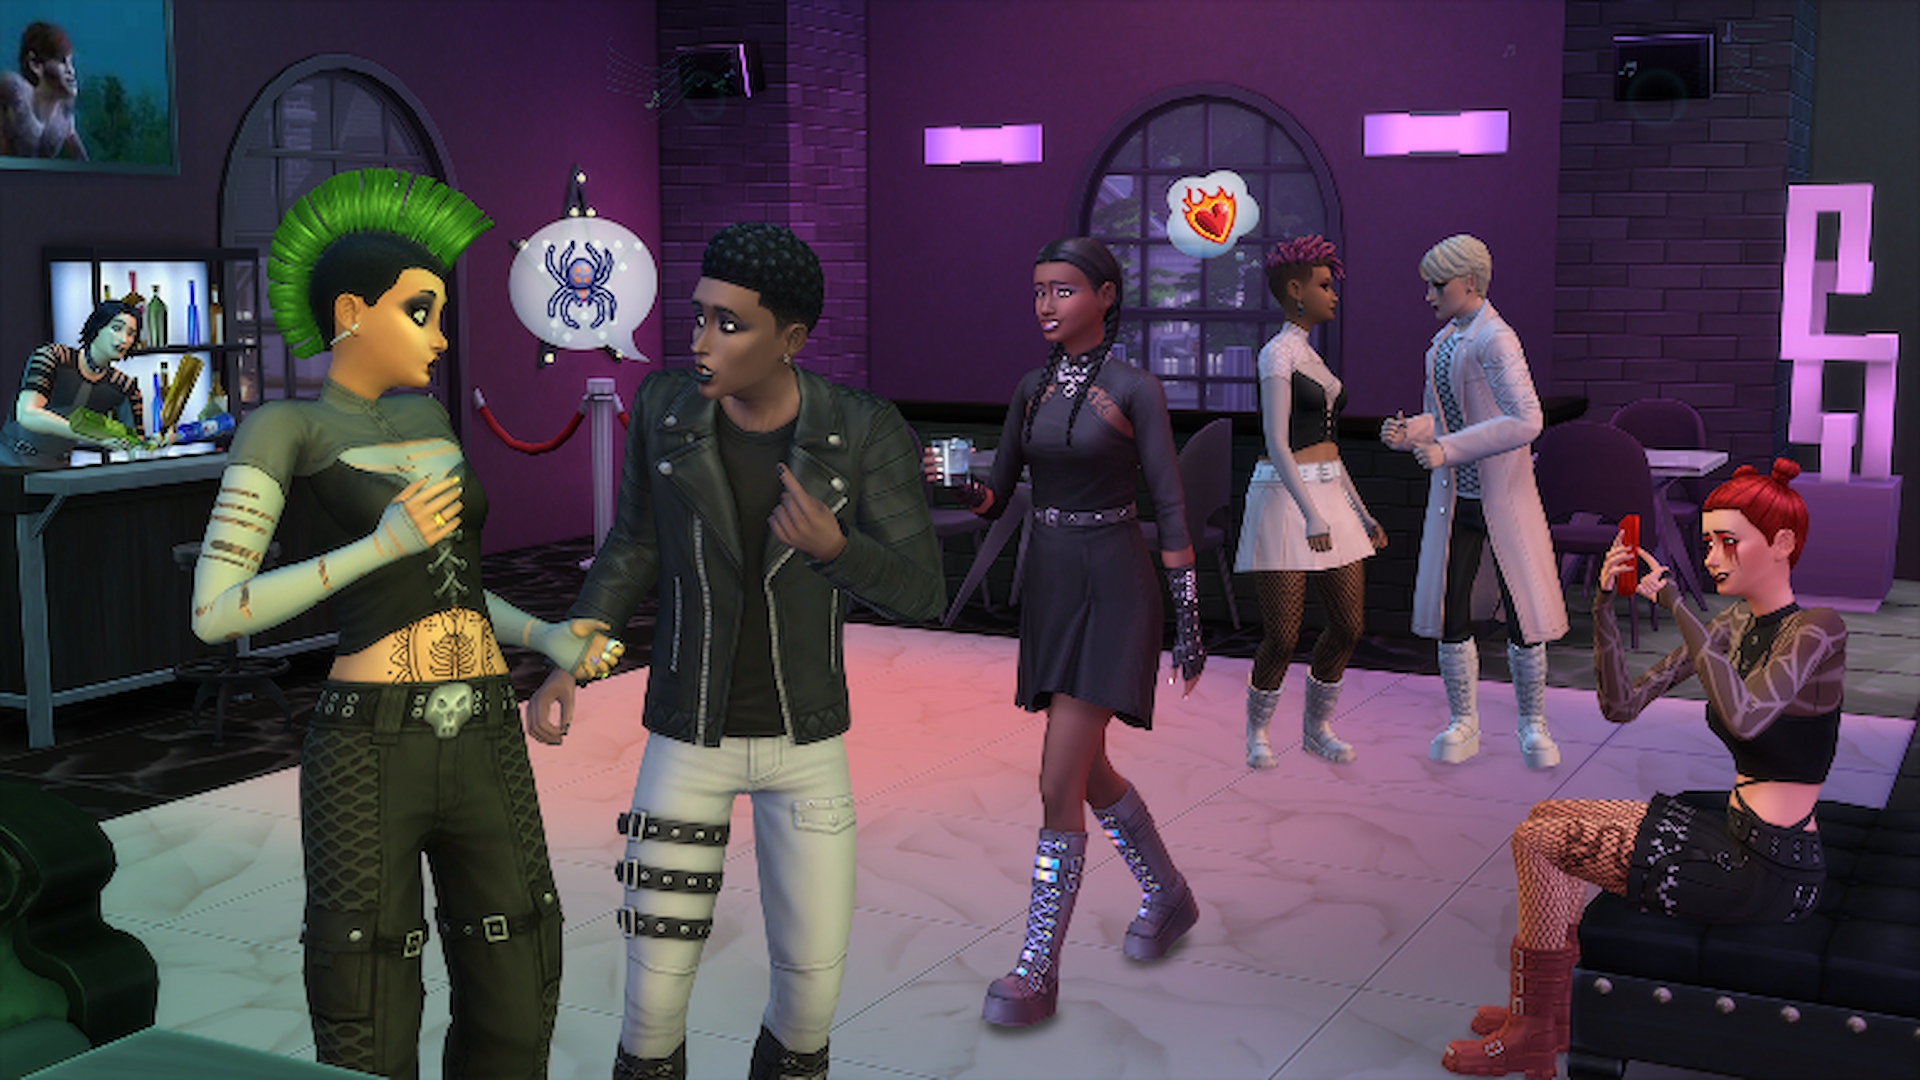 Kit Les Sims 4 goth goth : une capture d'écran de Sims lors d'une fête portant des vêtements sombres de style gothique